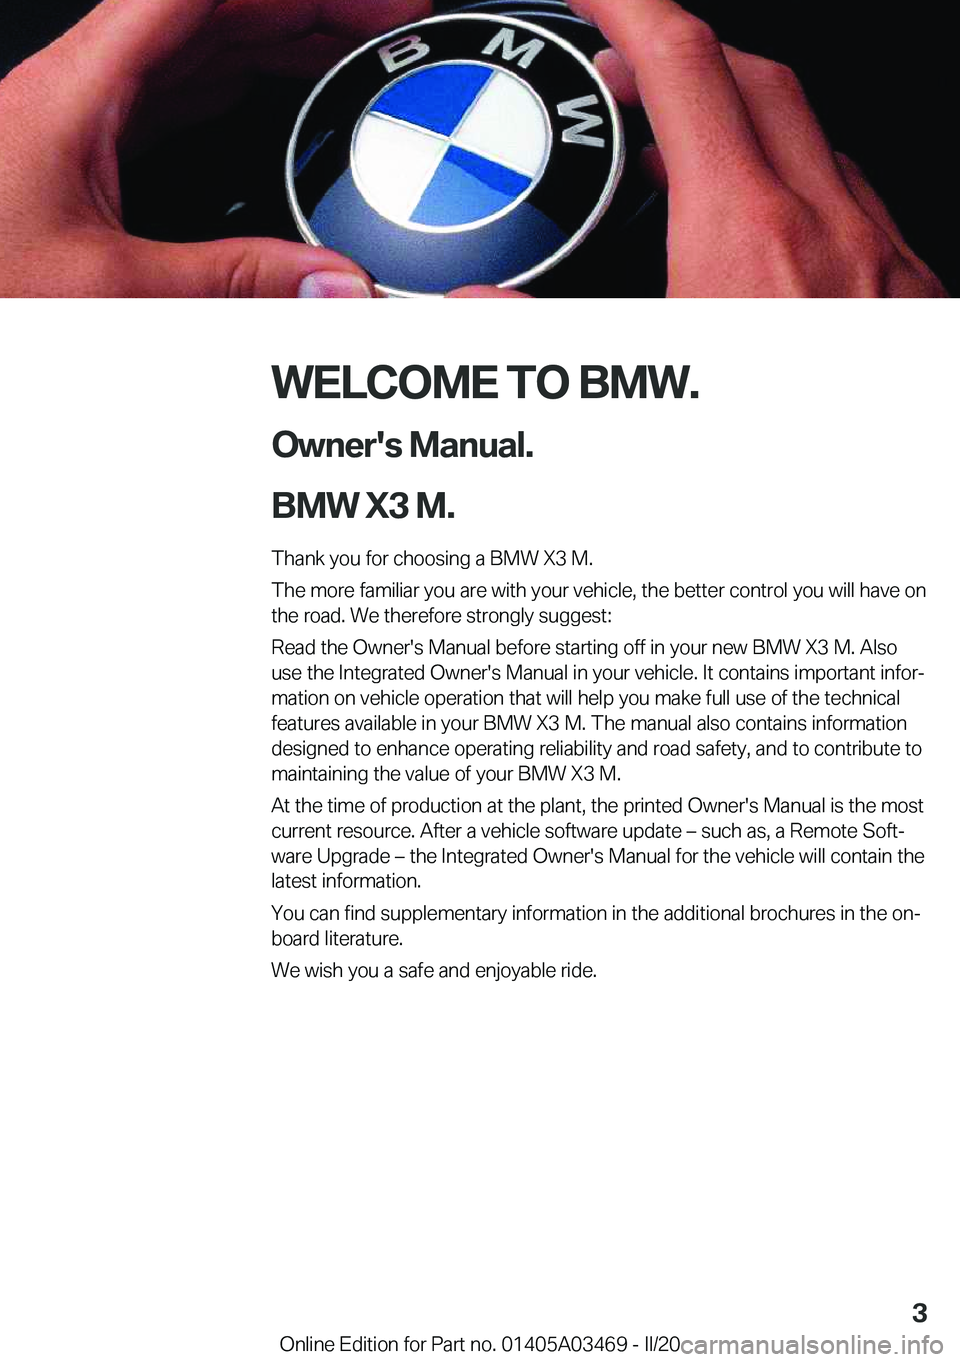 BMW X3 M 2021  Owners Manual �W�E�L�C�O�M�E��T�O��B�M�W�.�O�w�n�e�r�'�s��M�a�n�u�a�l�.
�B�M�W��X�3��M�.
�T�h�a�n�k��y�o�u��f�o�r��c�h�o�o�s�i�n�g��a��B�M�W��X�3��M�.
�T�h�e��m�o�r�e��f�a�m�i�l�i�a�r��y�o�u��a�